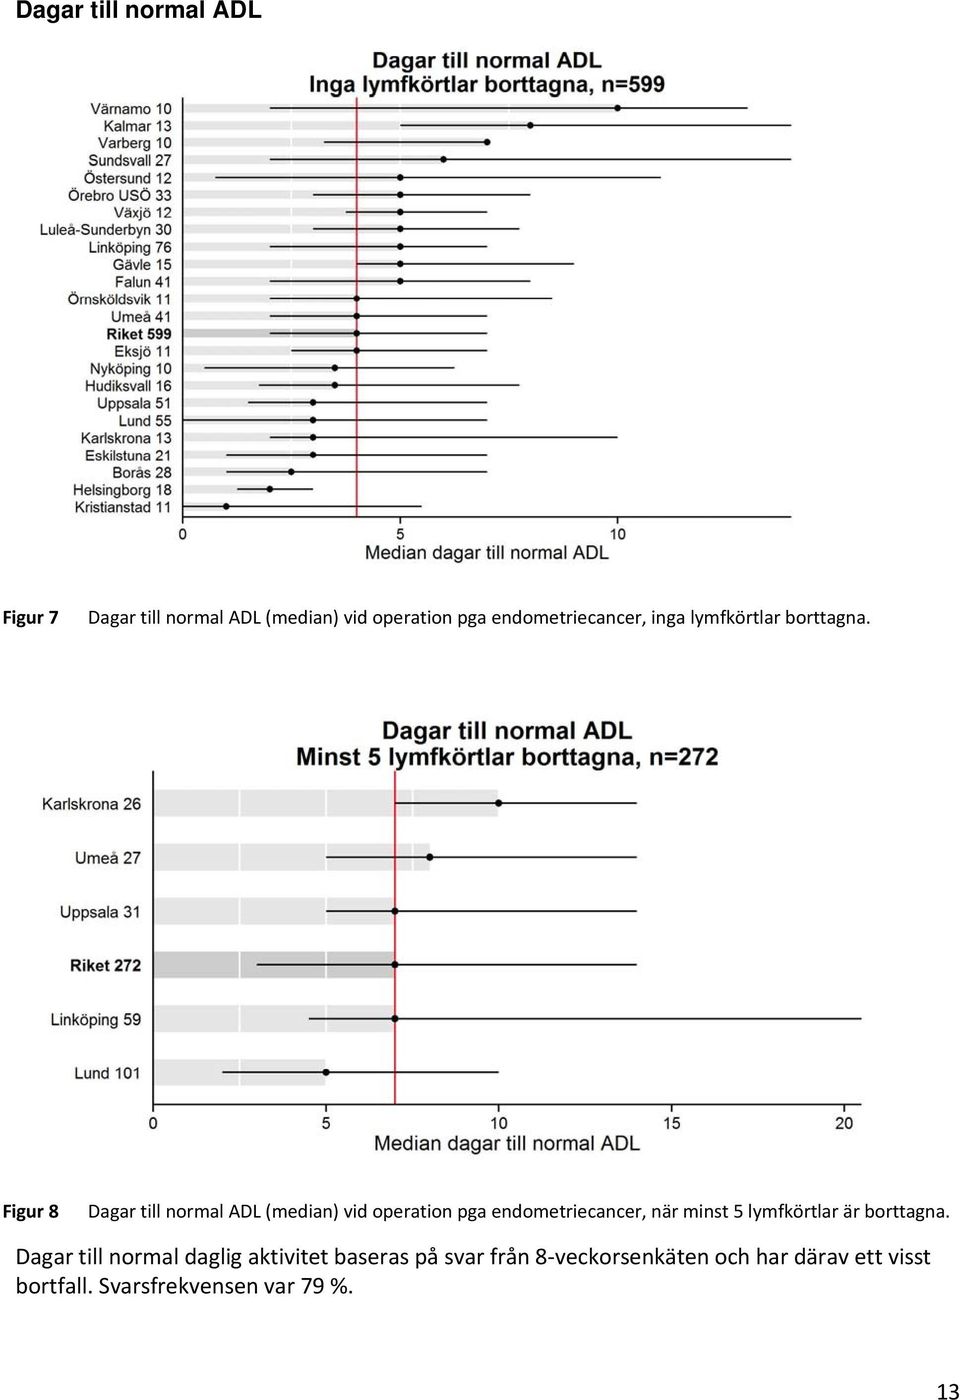 Figur 8 Dagar till normal ADL (median) vid operation pga endometriecancer, när minst 5